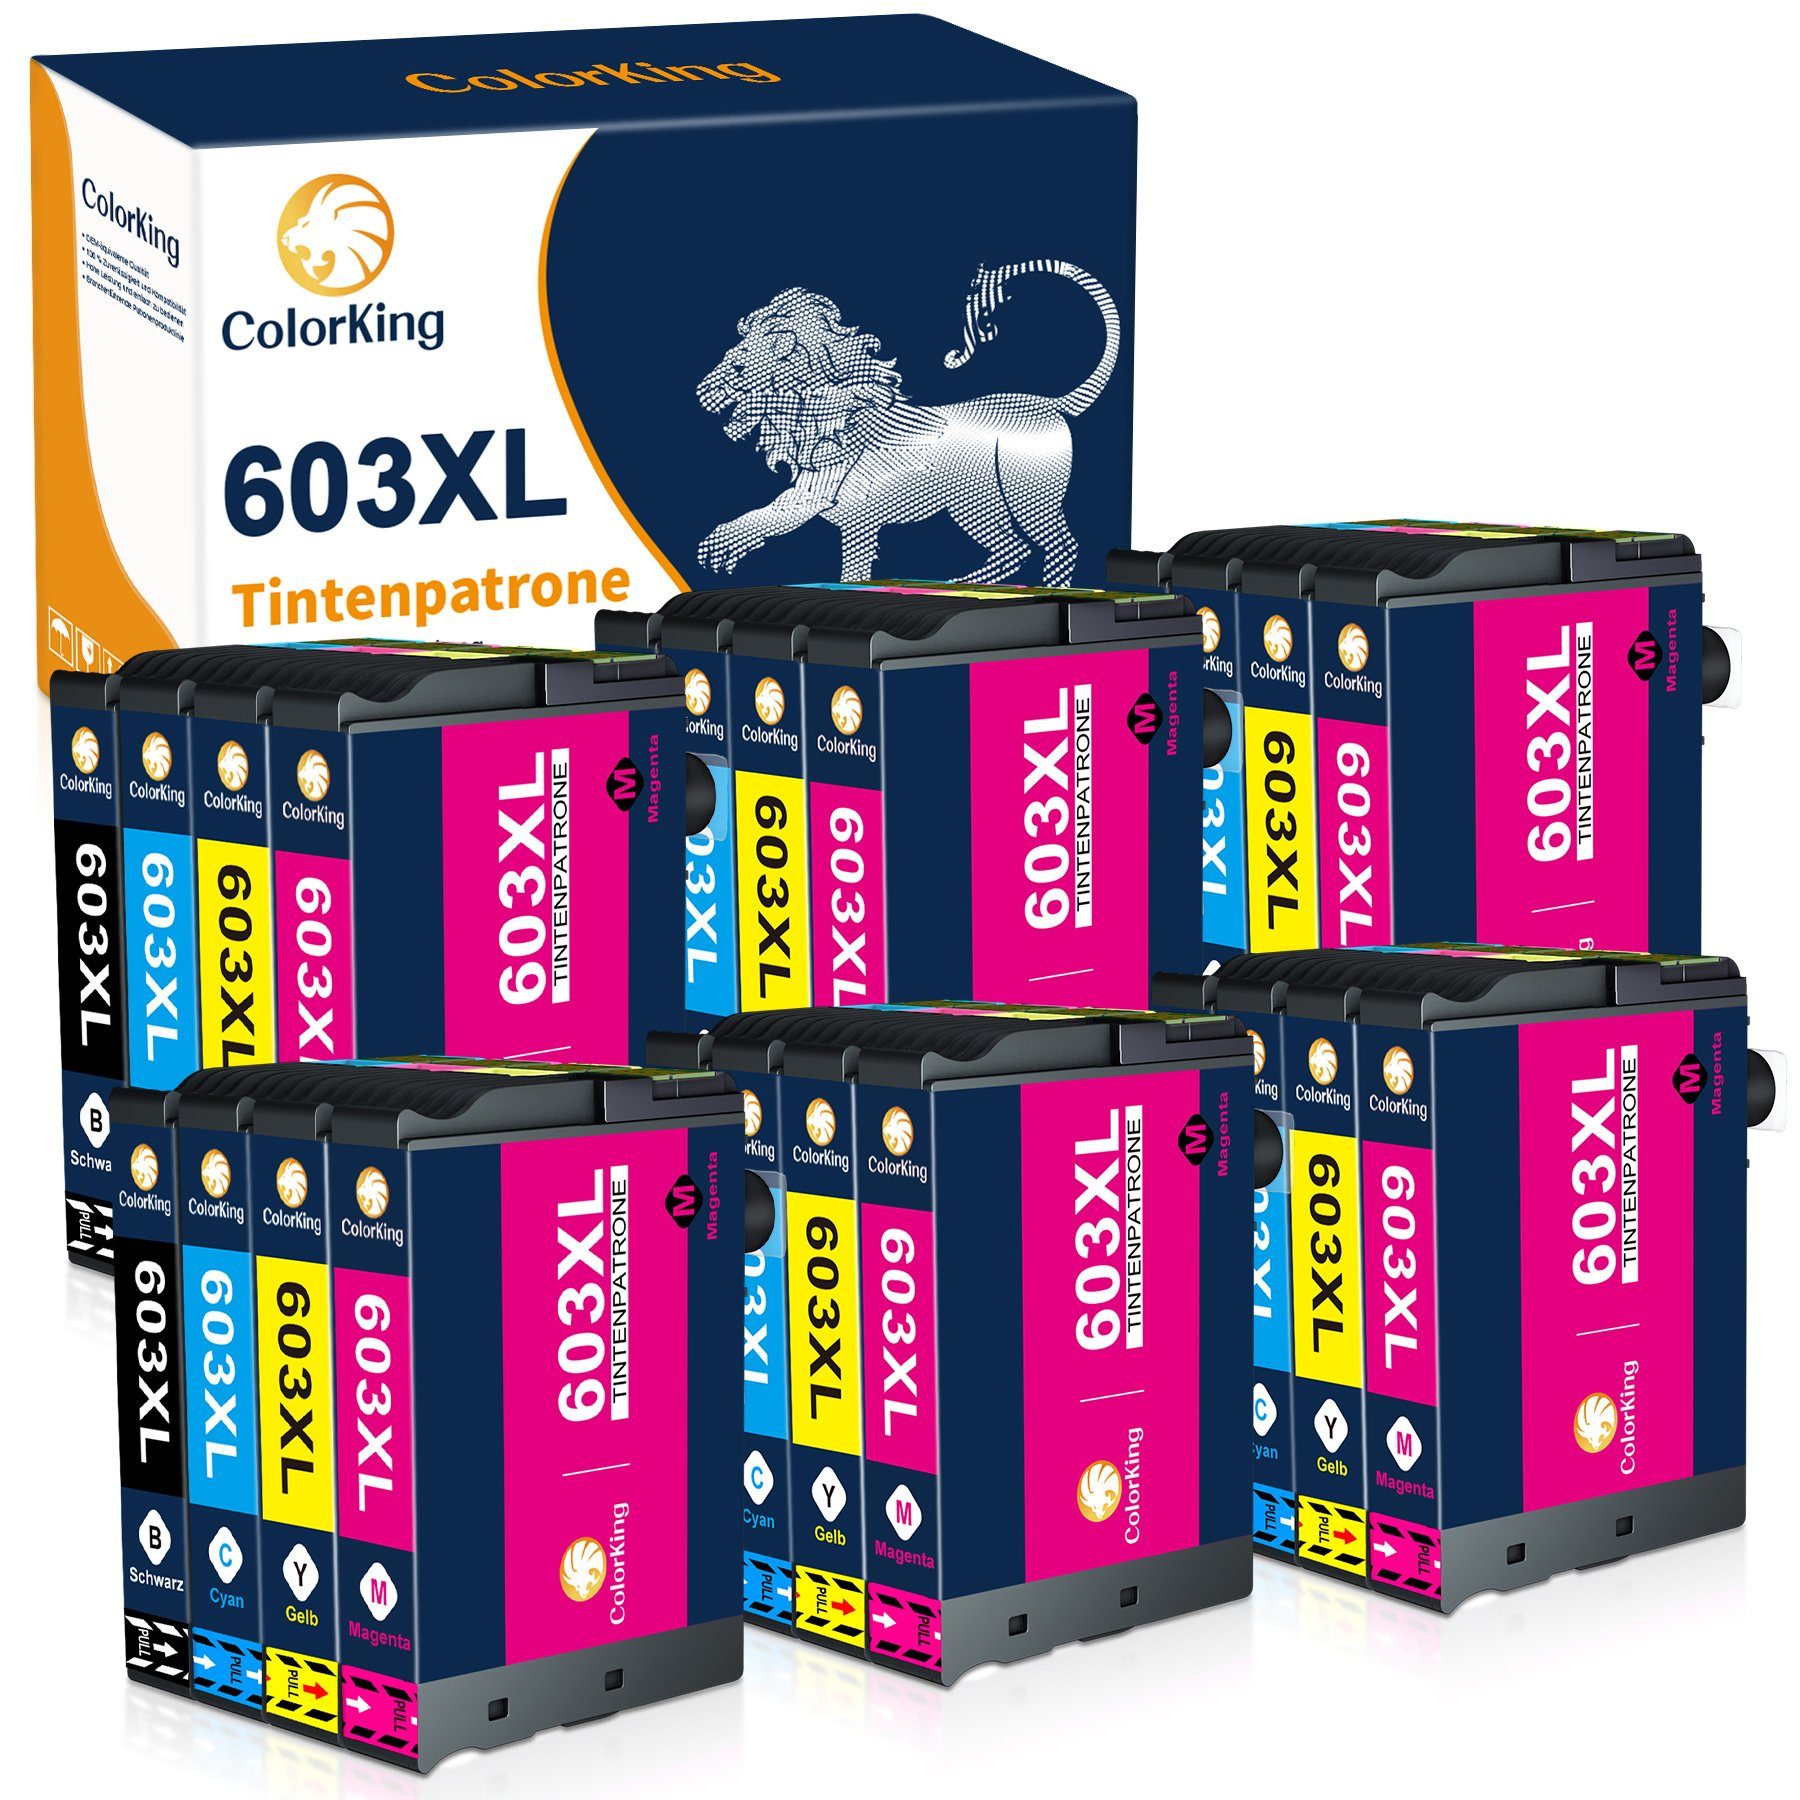 ColorKing 603XL multipack Tintenpatrone (Ersatz für Workforce WF-2835 2850 2830 2810) 6* Schwarz, 6* Cyan, 6* Magenta, 6* Gelb (24er Set)